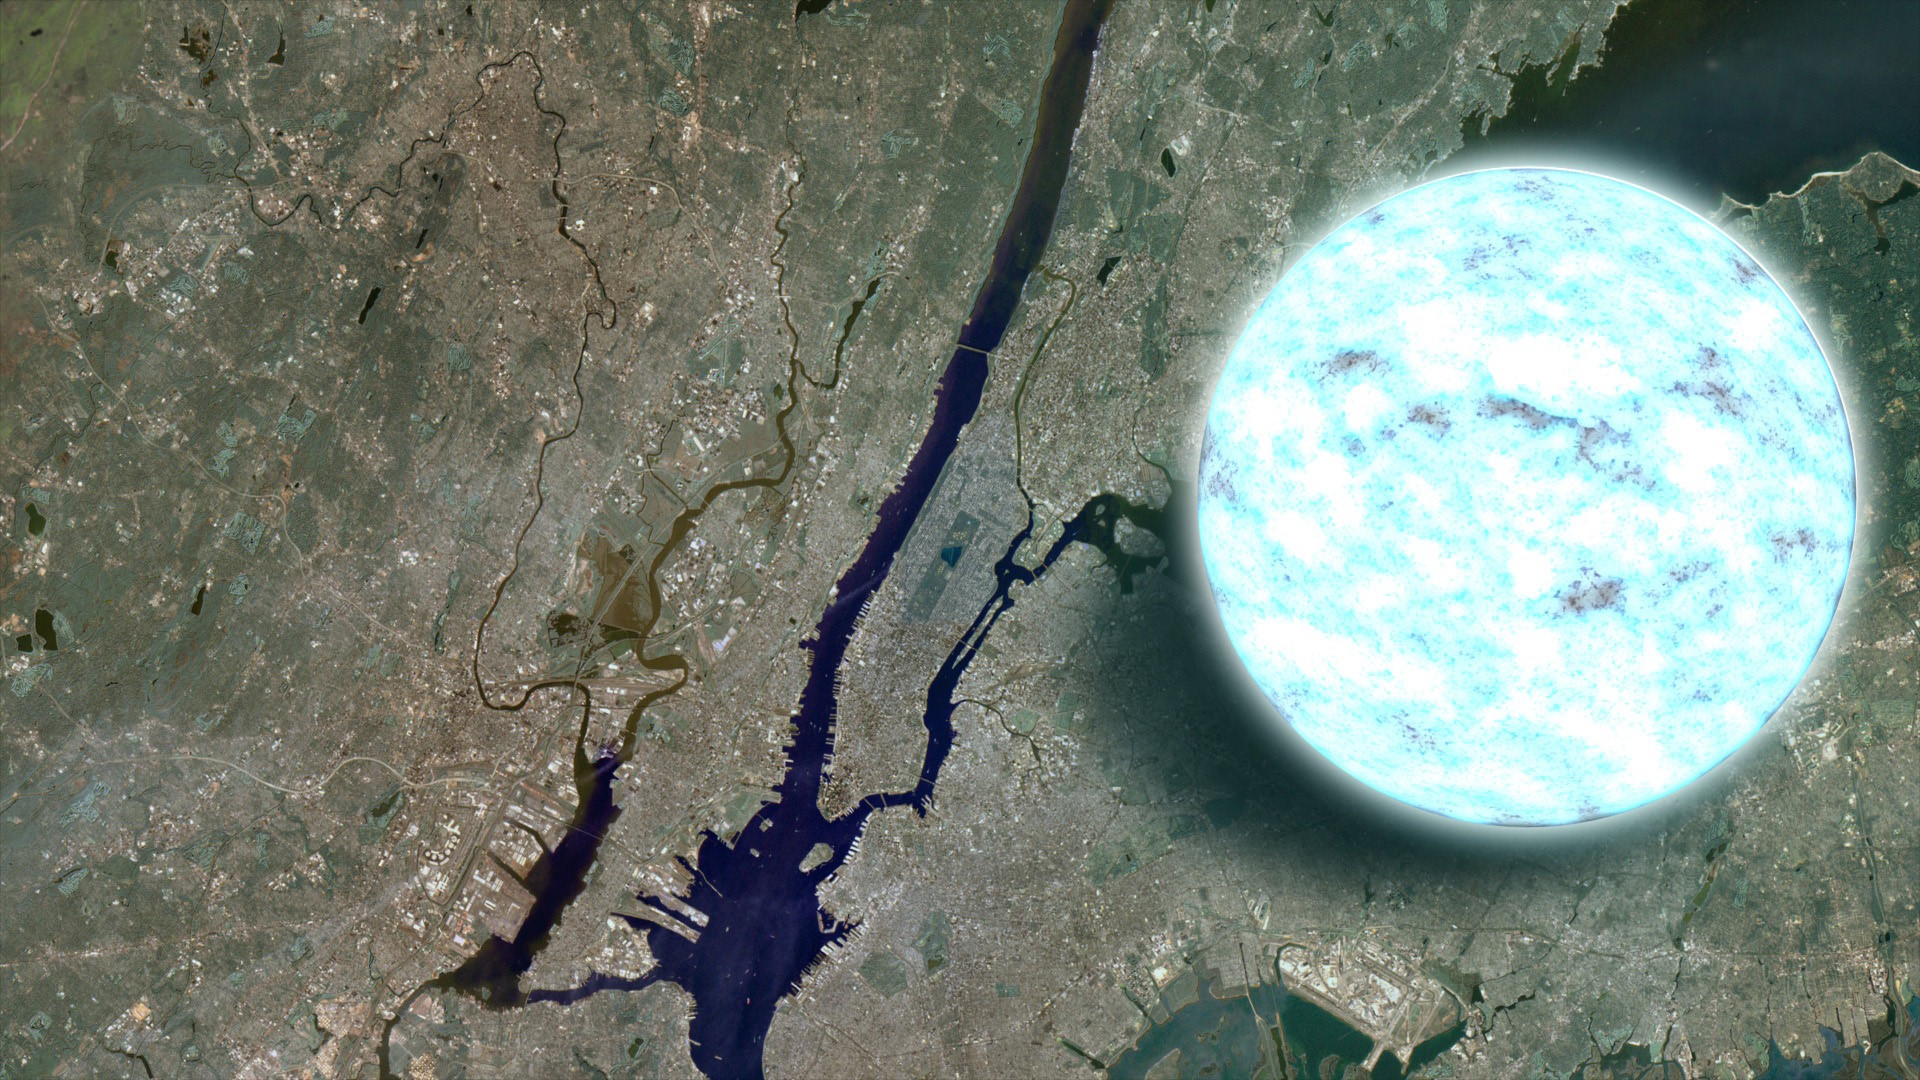 Manhattan Island compared to a neutron star